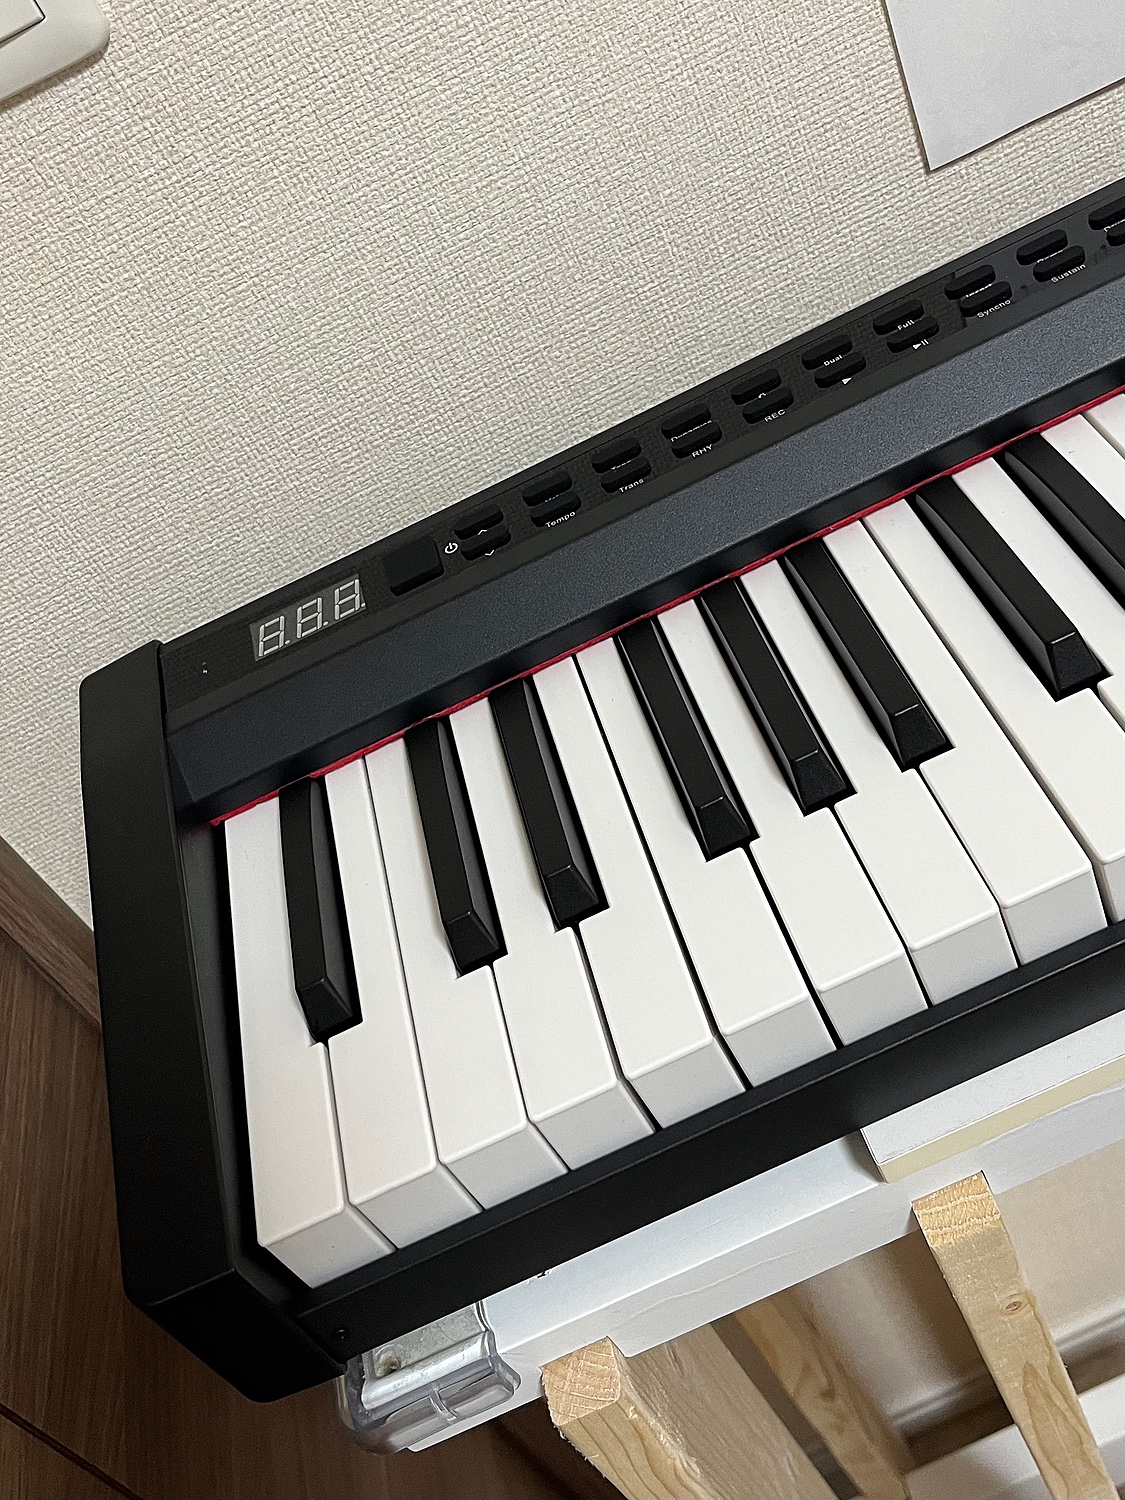 楽天市場 最新モデル 電子ピアノ 鍵盤 充電可能 日本語操作ボタン キーボード コードレス キーボード スリム 軽い Midi対応 新学期 新生活 演奏動画あり 1年保証 Pl保険加入済み Carina 楽器 2ページ目 みんなのレビュー 口コミ